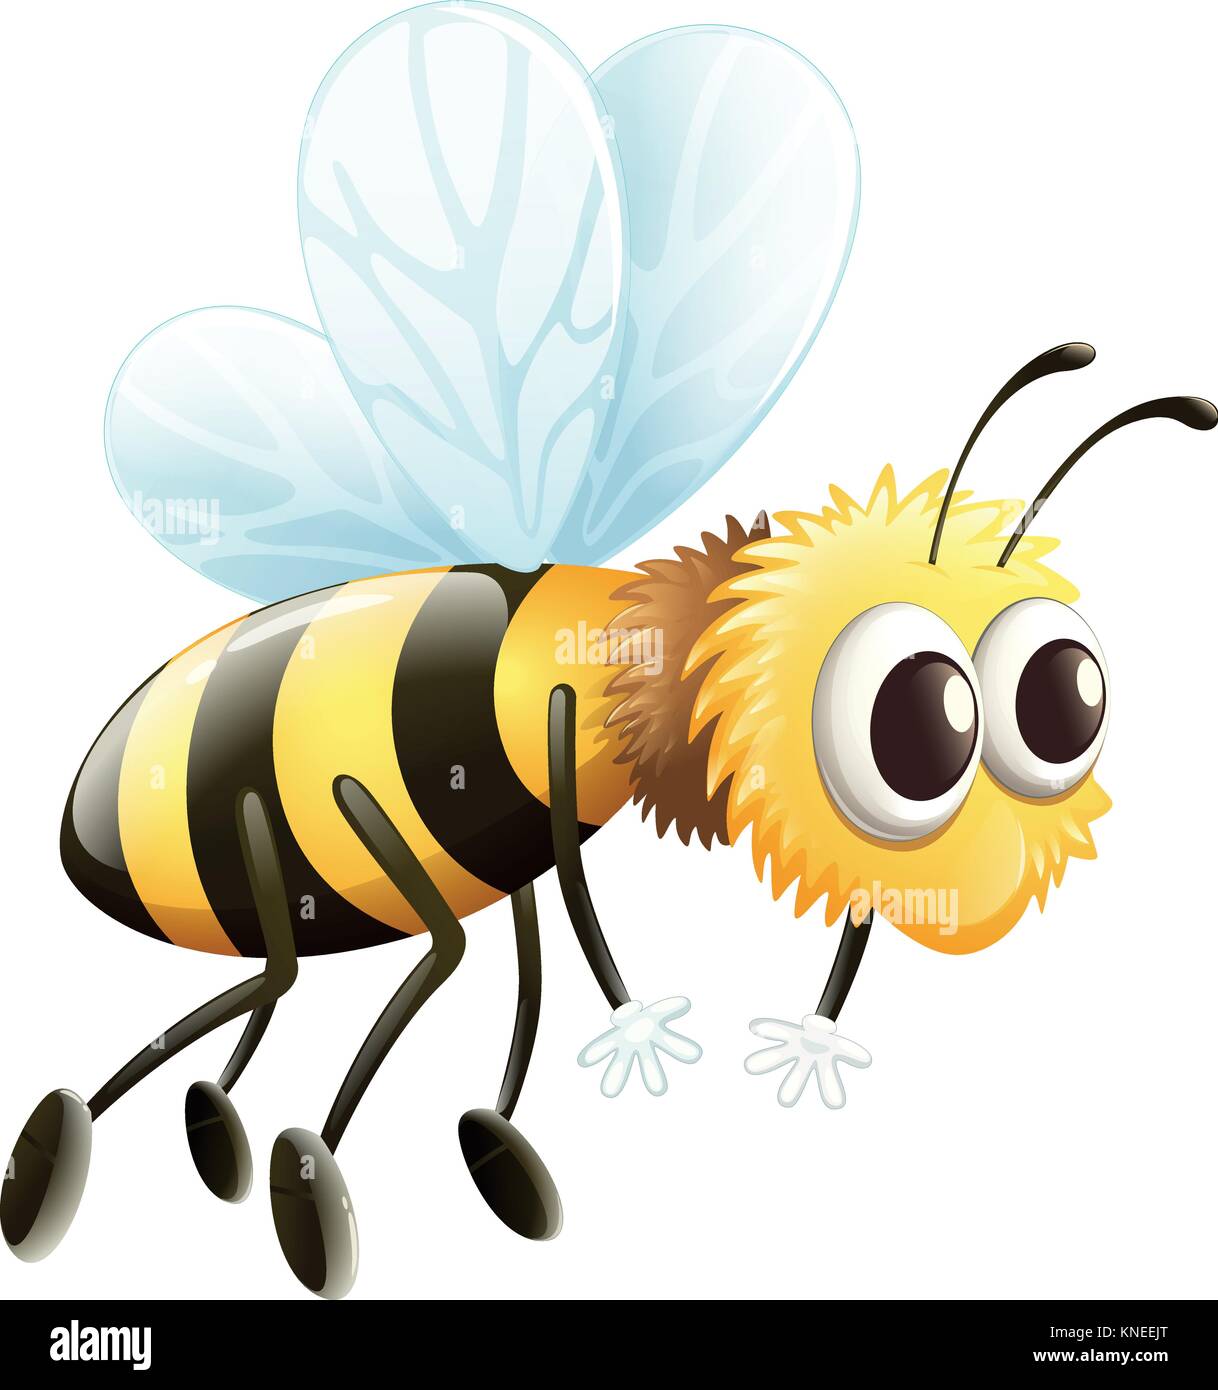 Illustration d'une abeille sur un fond blanc Illustration de Vecteur